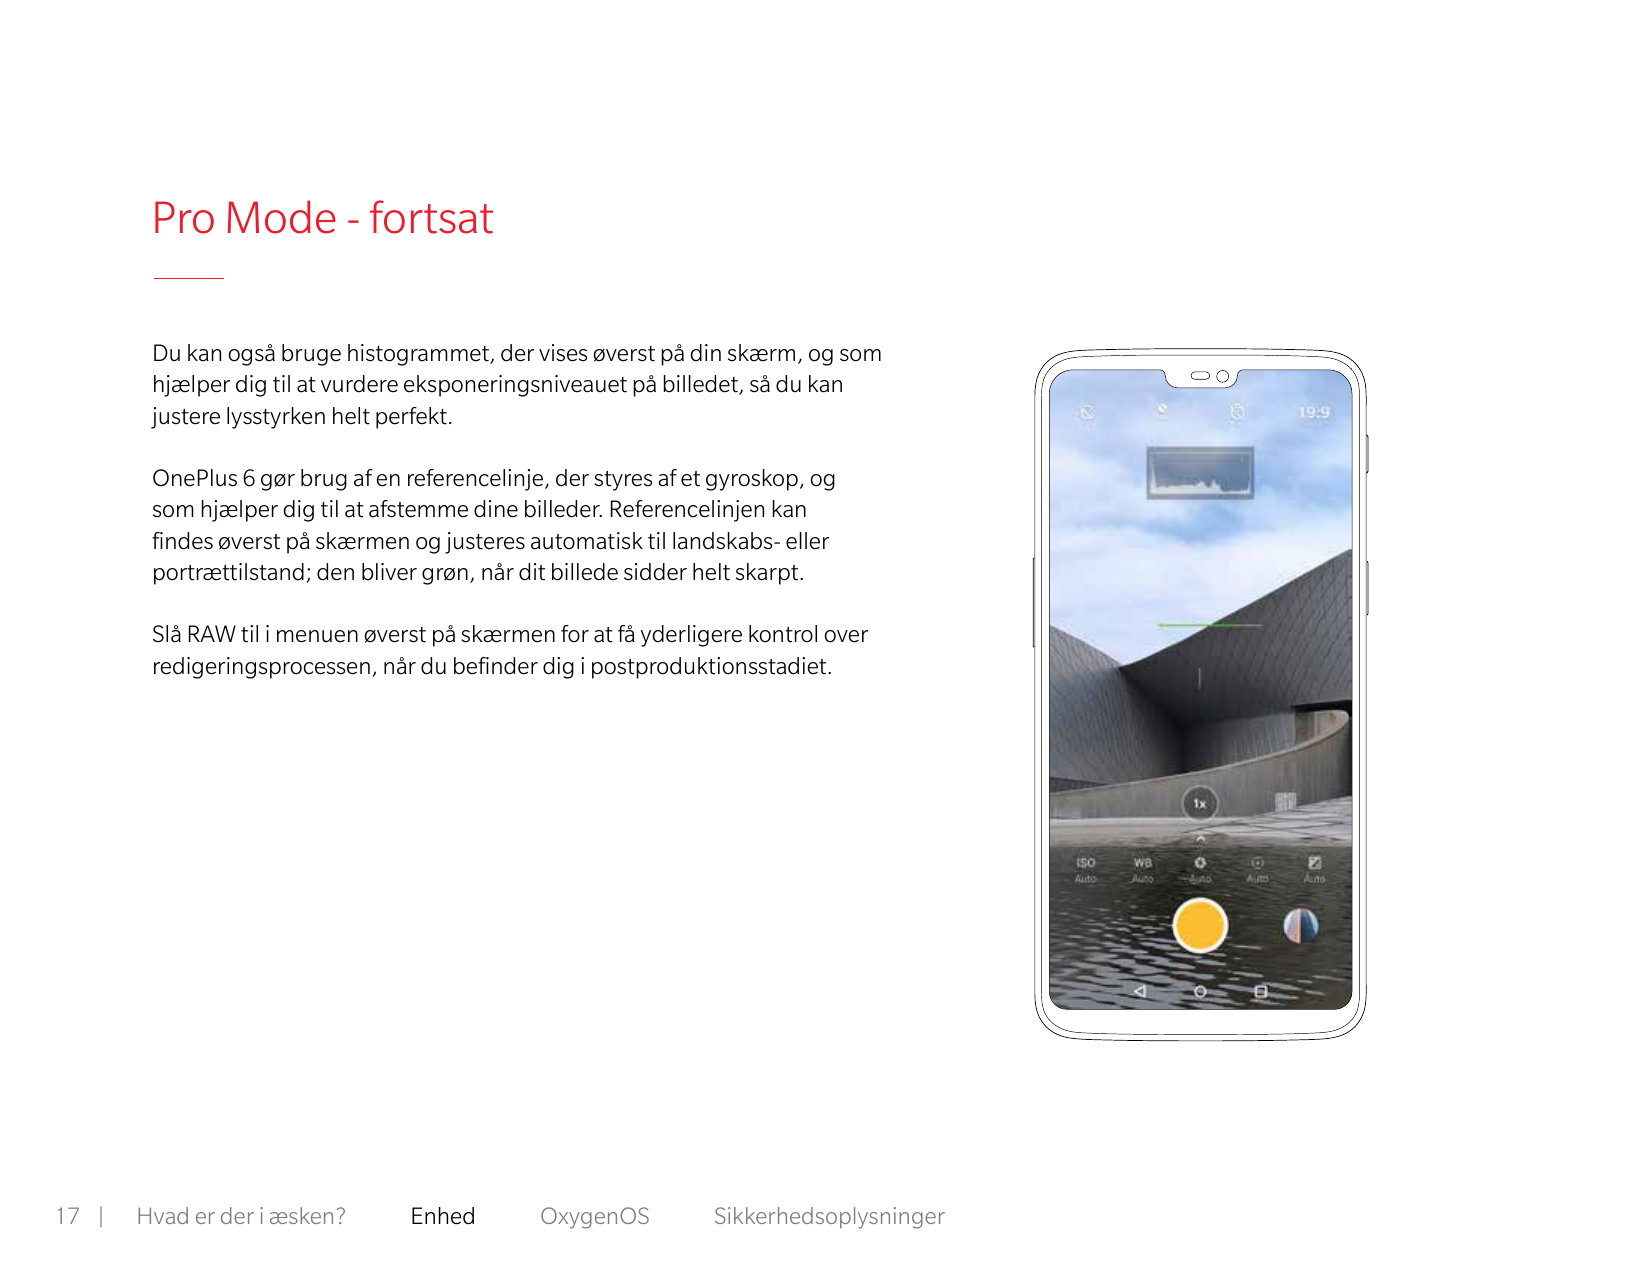 Pro Mode - fortsatDu kan også bruge histogrammet, der vises øverst på din skærm, og somhjælper dig til at vurdere eksponeringsni